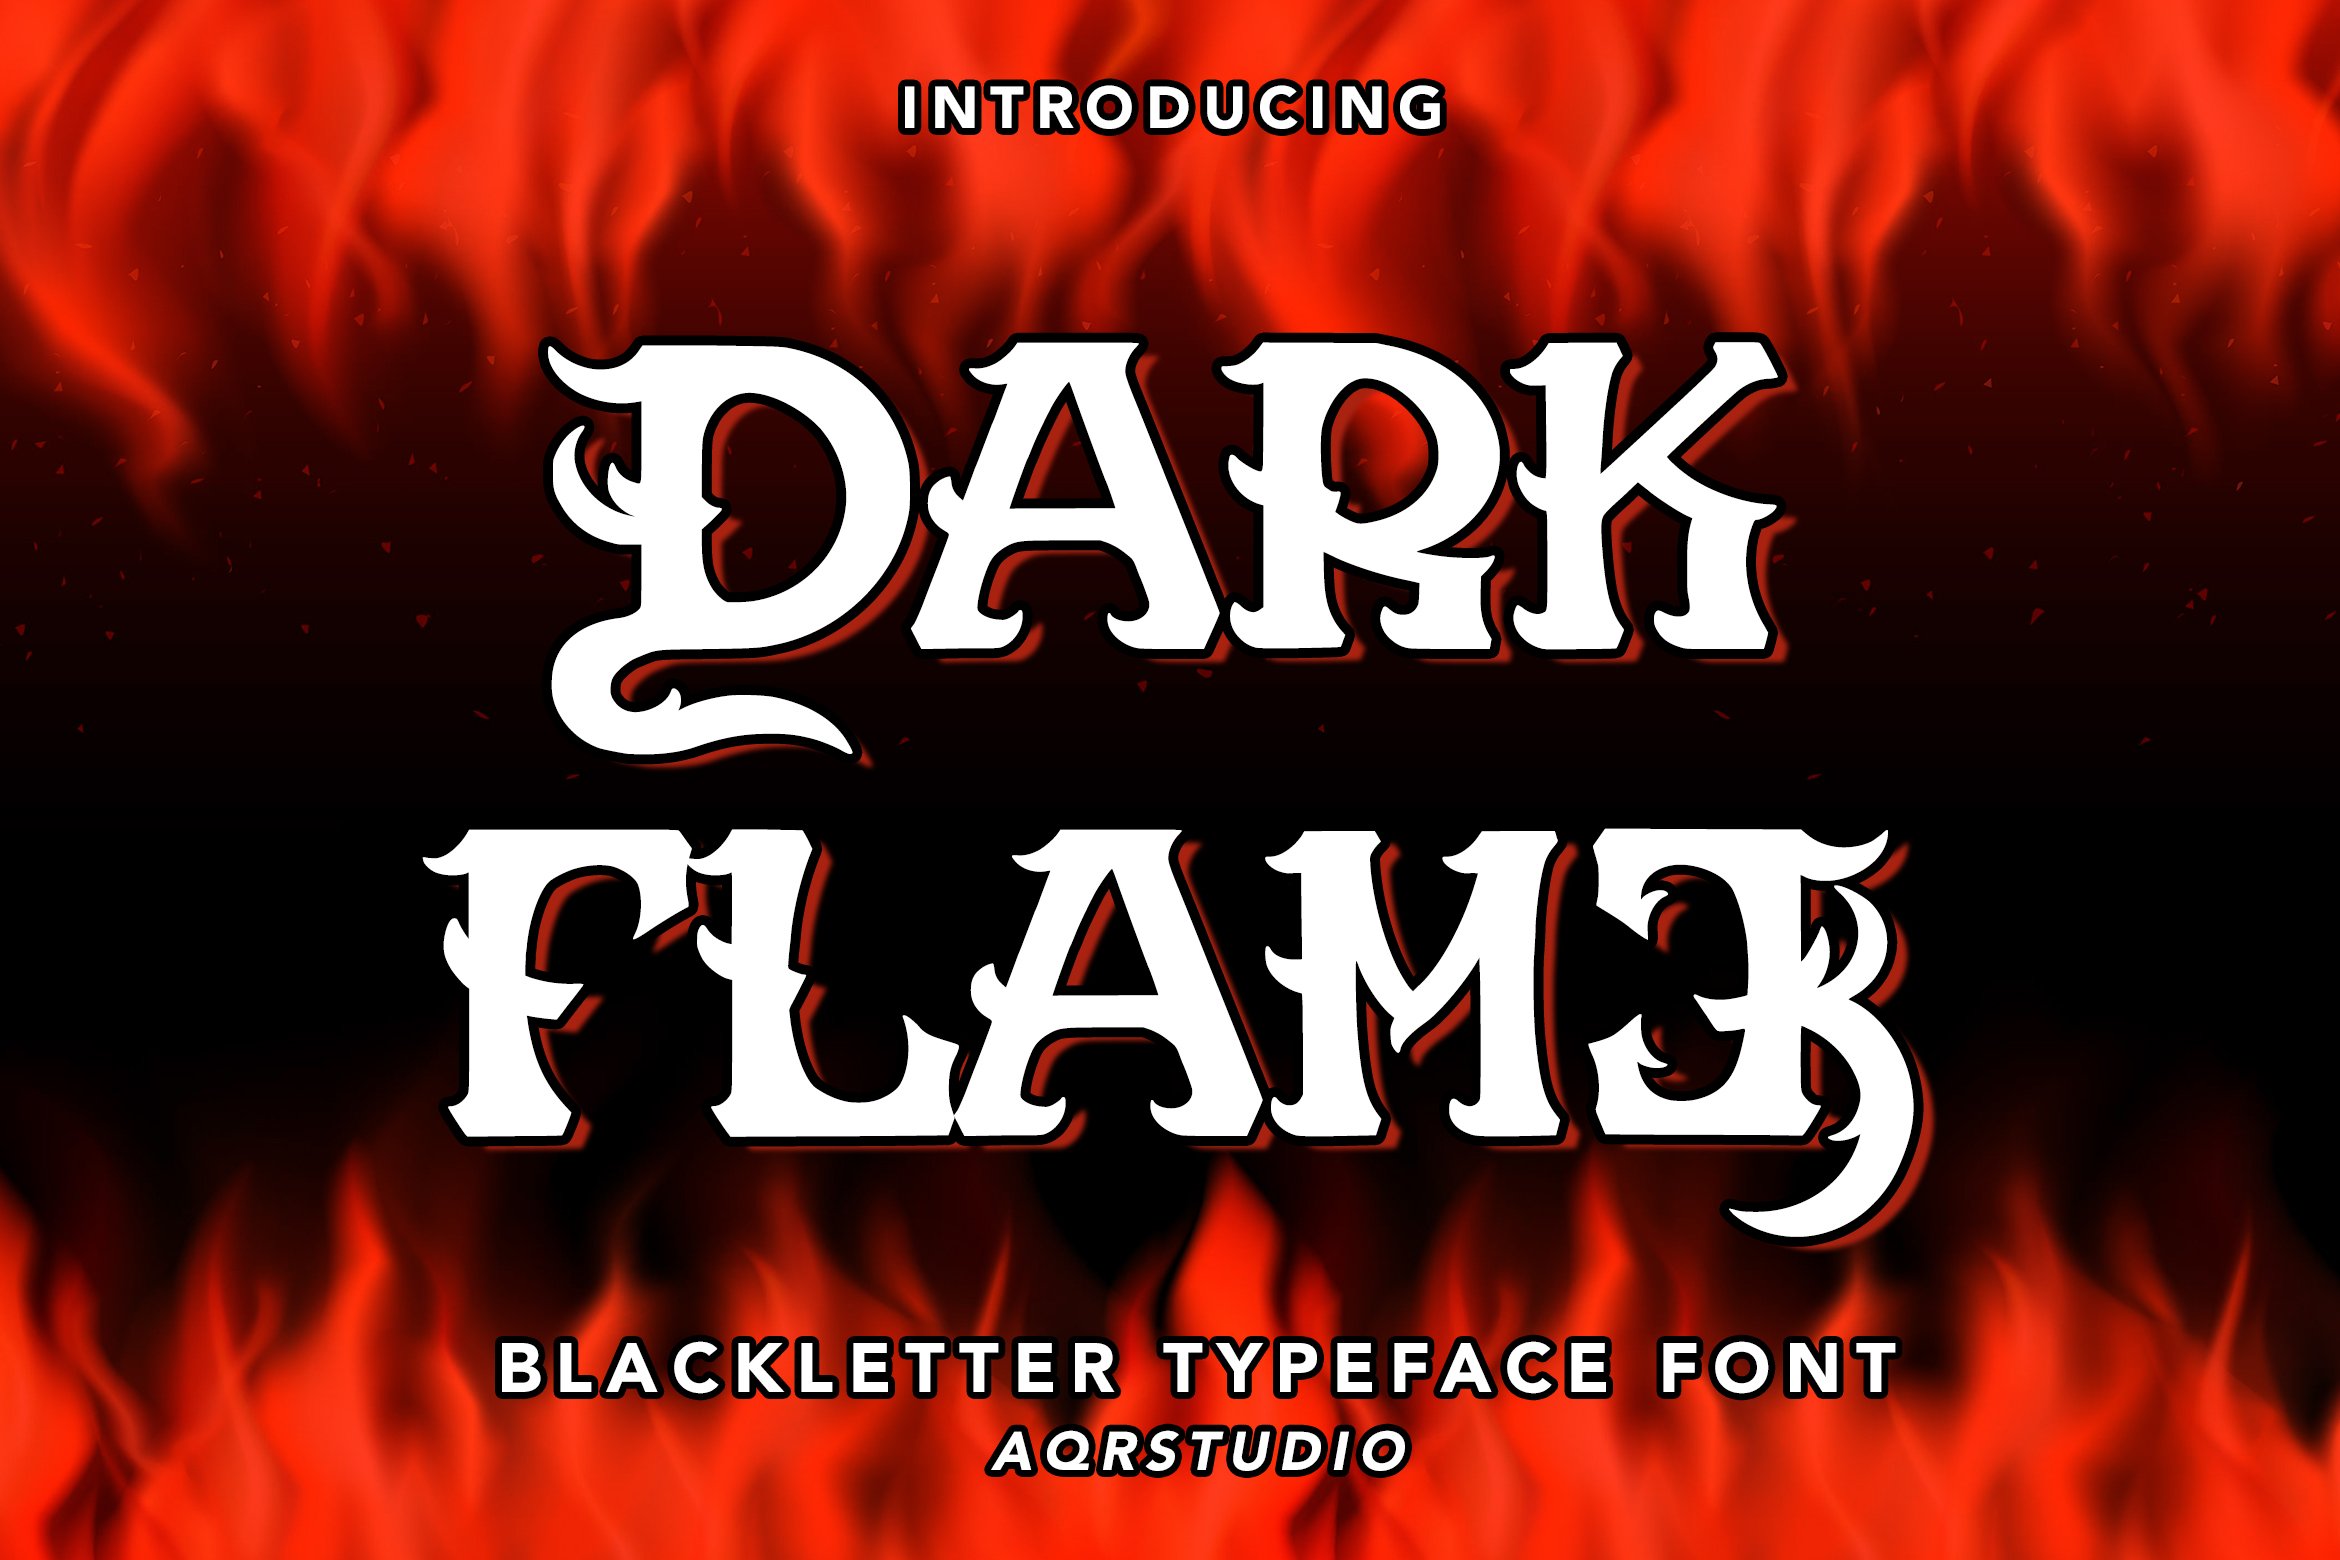 Dark Flame - Blackletter Font cover image.